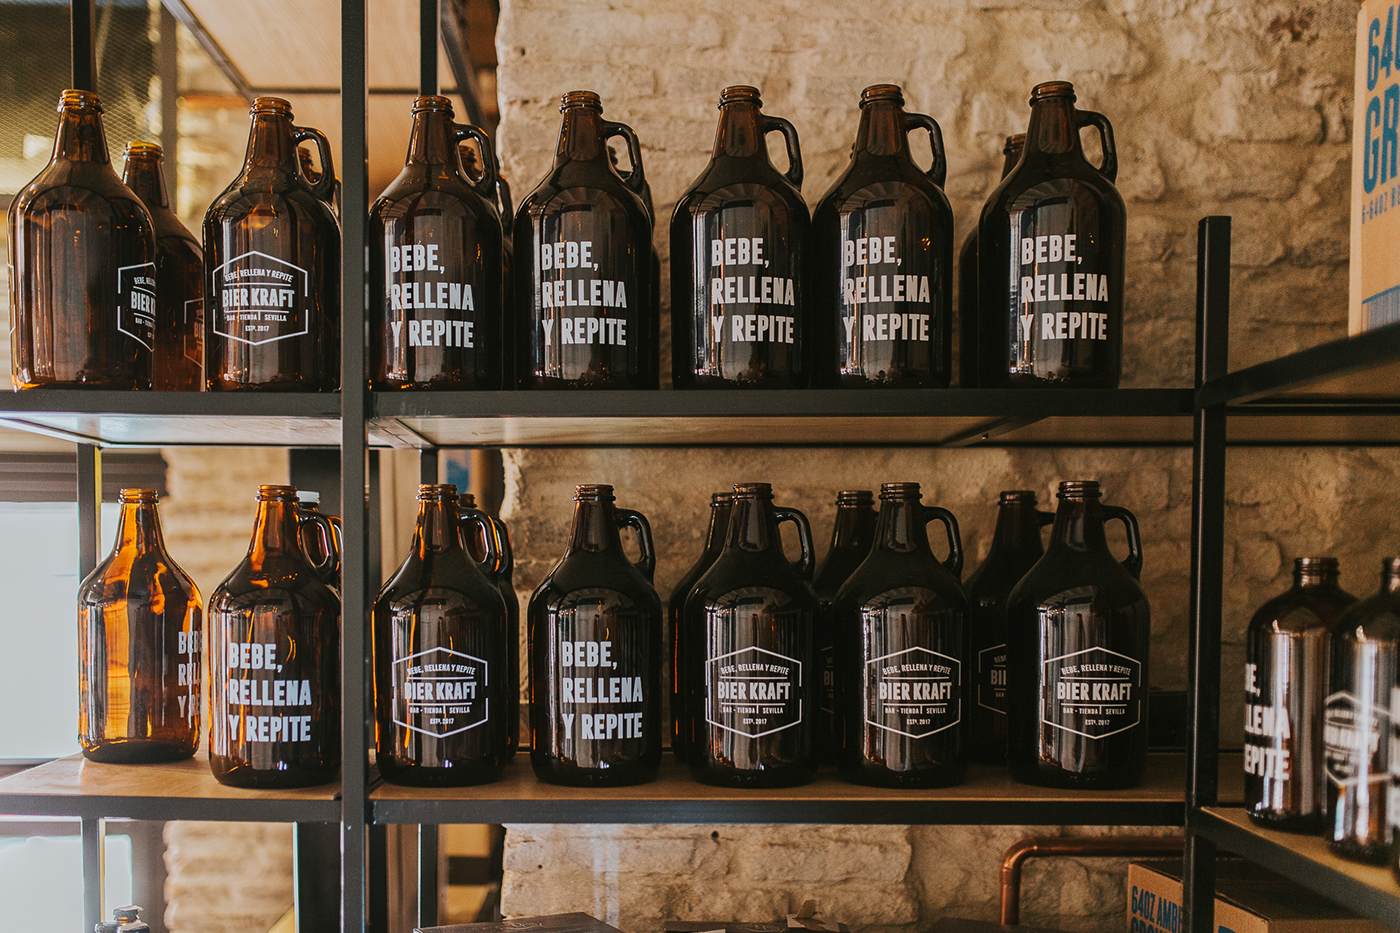 design graphicdesign Packaging Growlers bottles craftbeer cervezaartesana